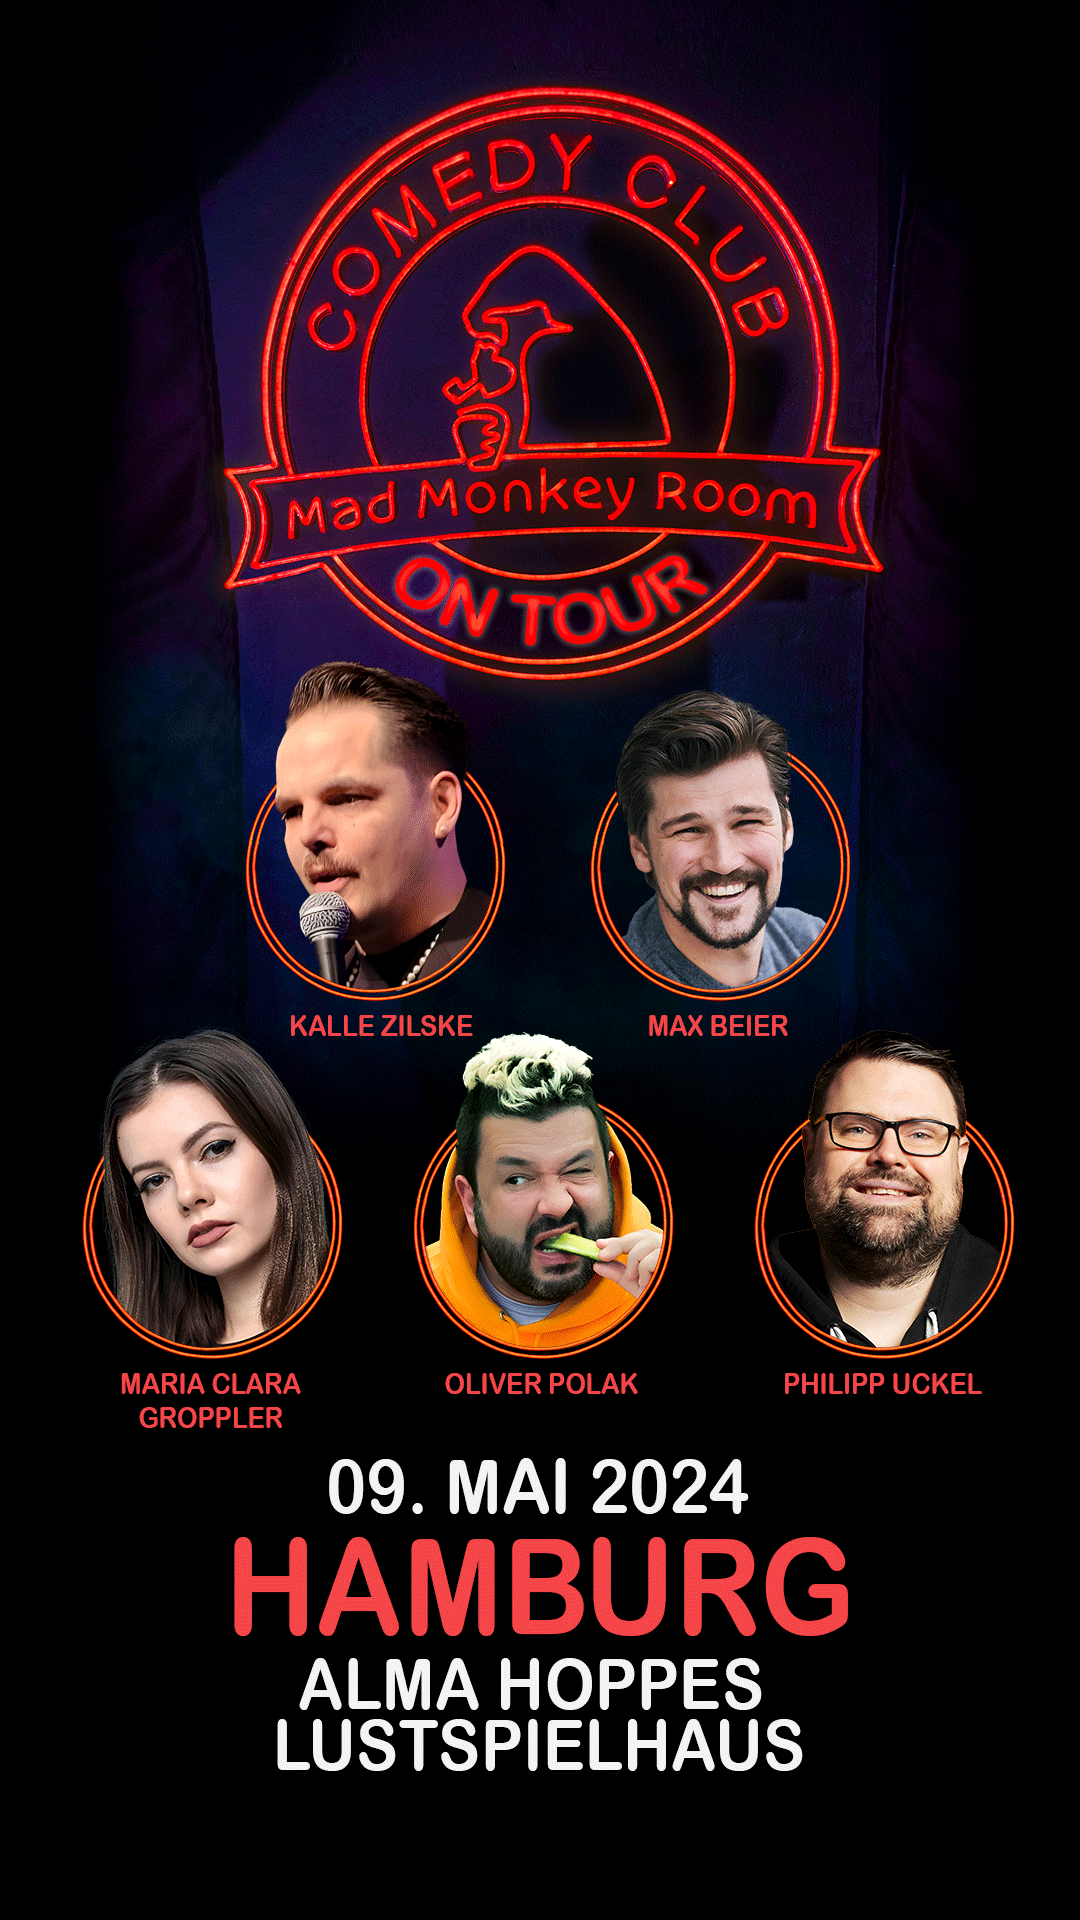 Mad Monkey Room on Tour - Mad Monkey Room on Tour